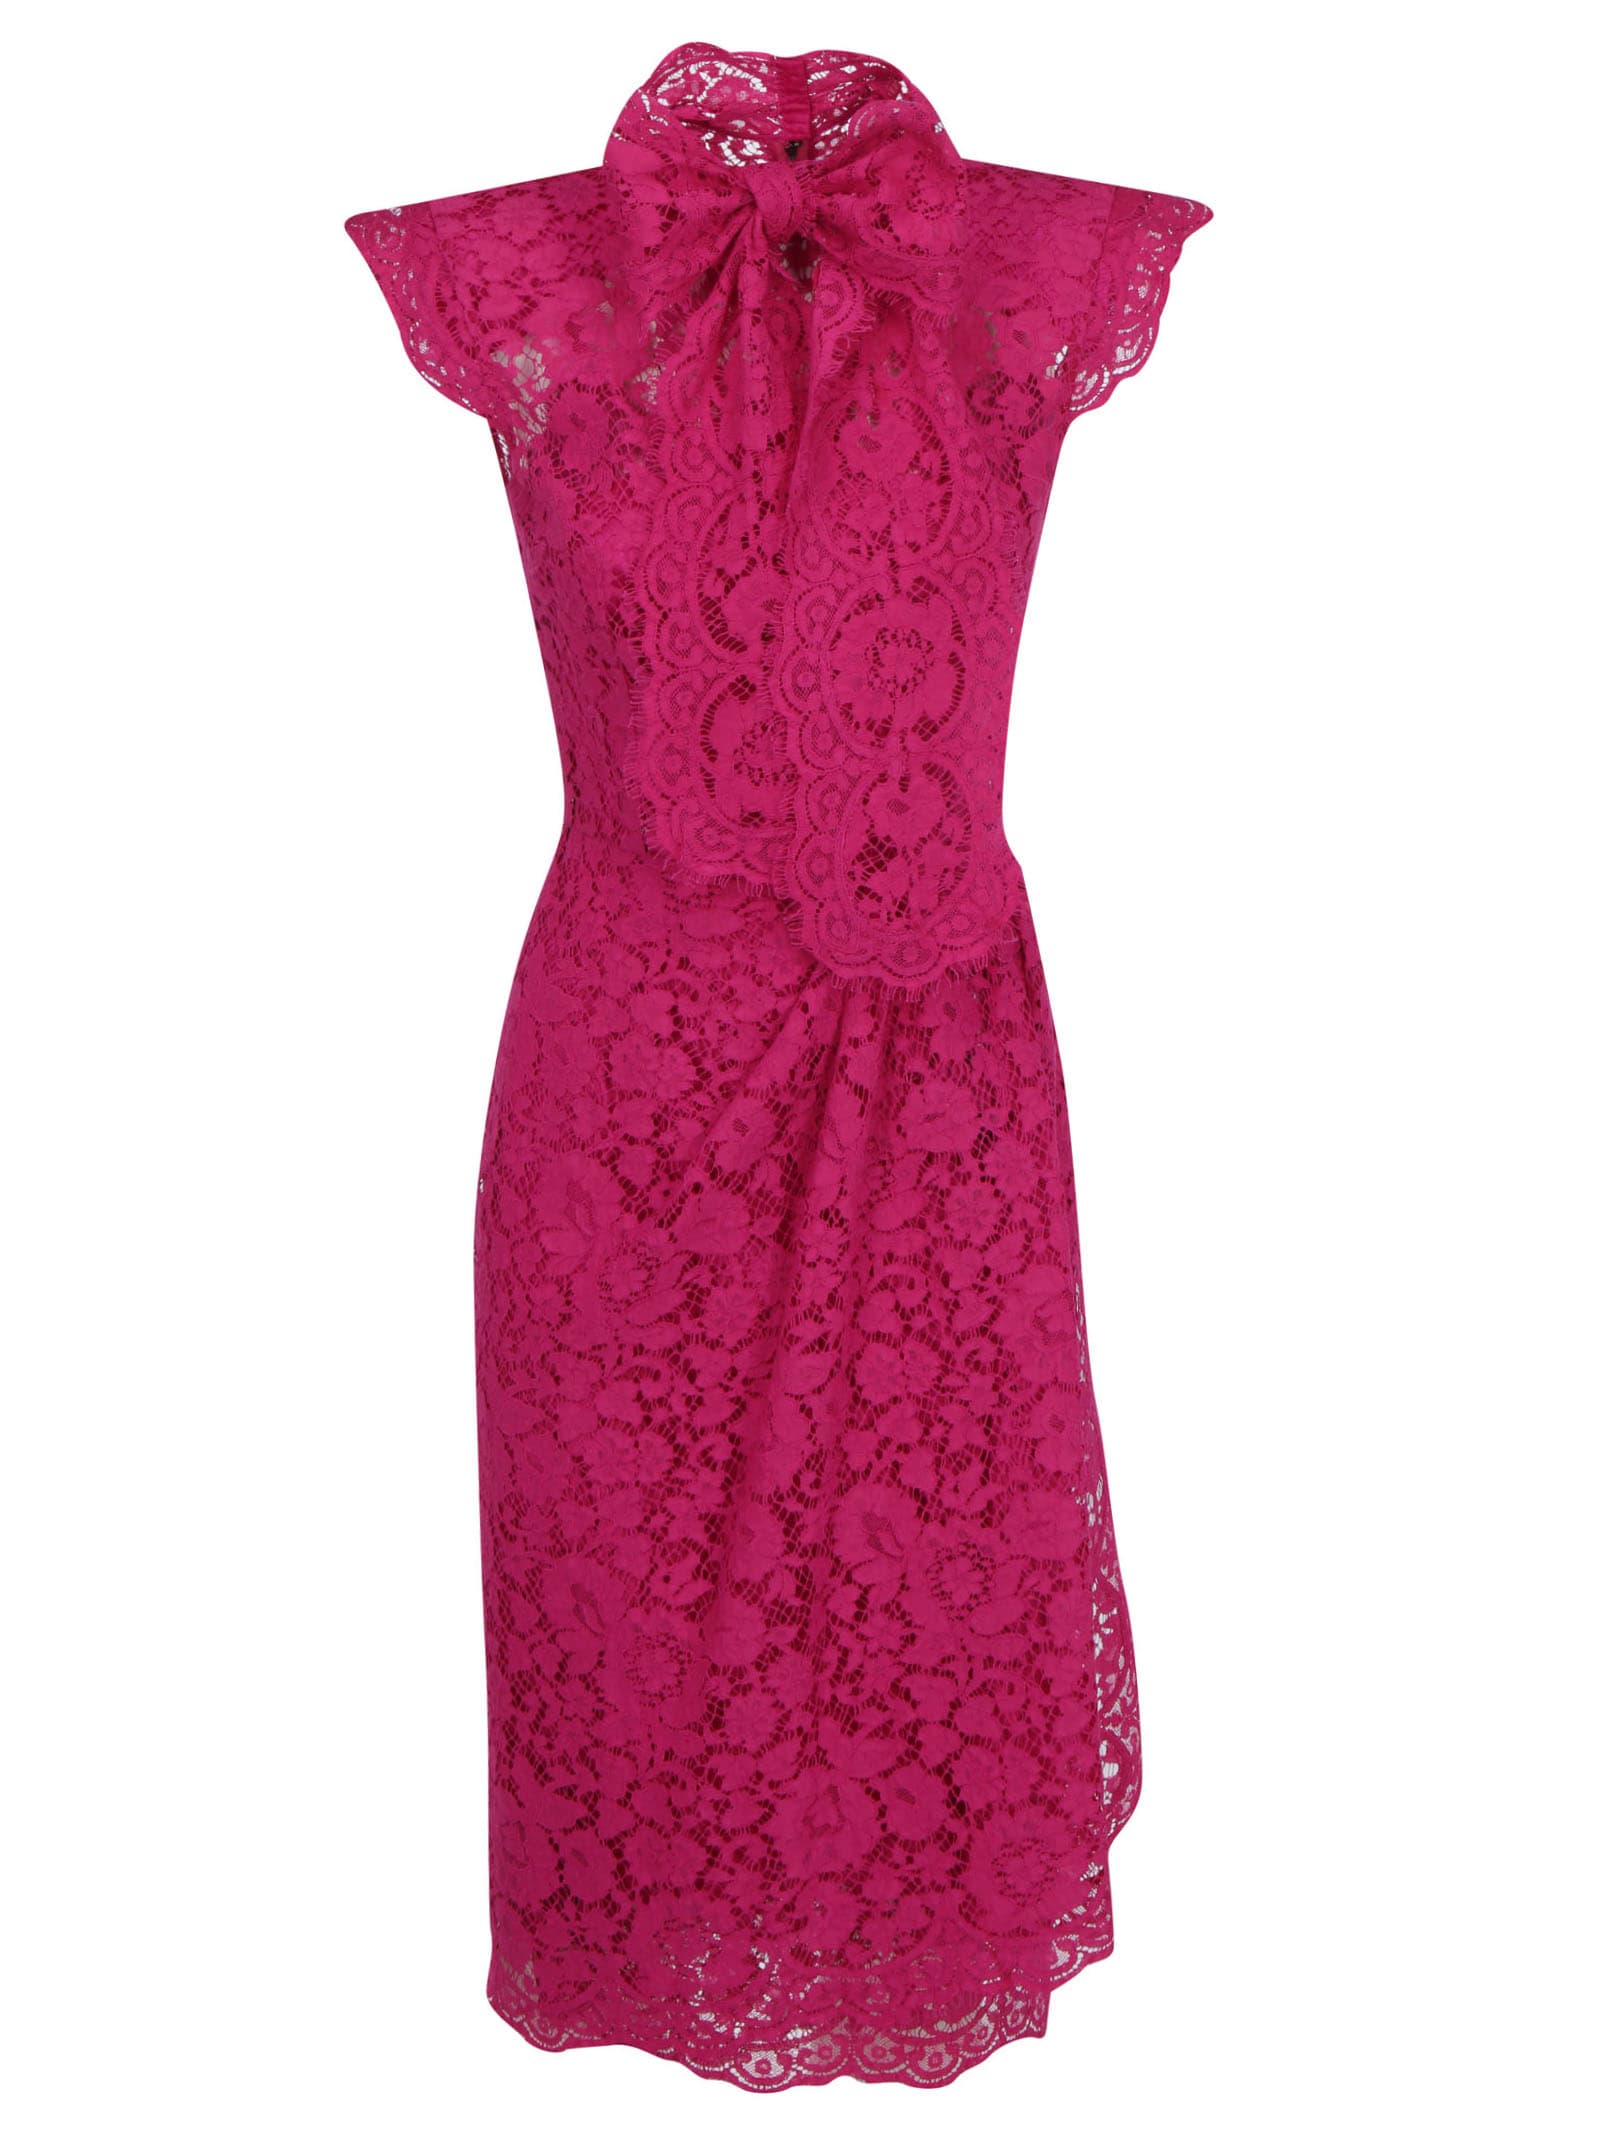 Dolce & Gabbana Dress In Rosa Shocking